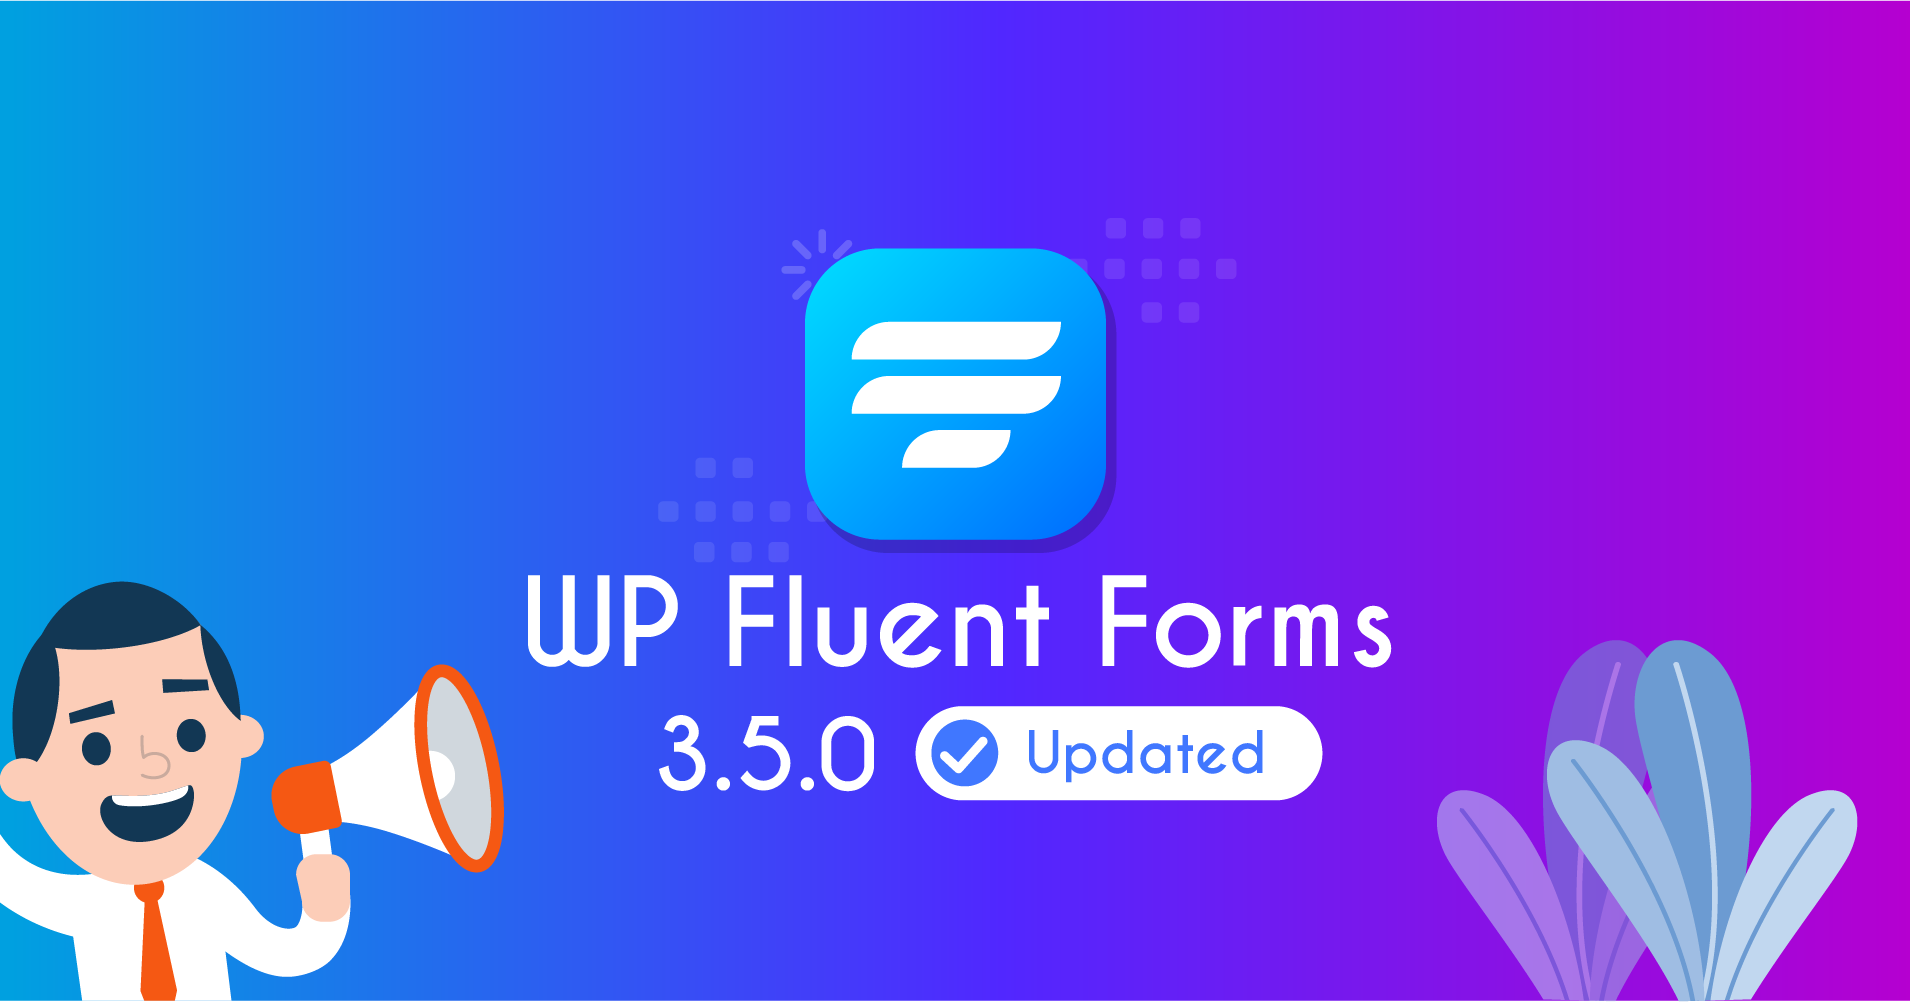 Fluent Forms Update